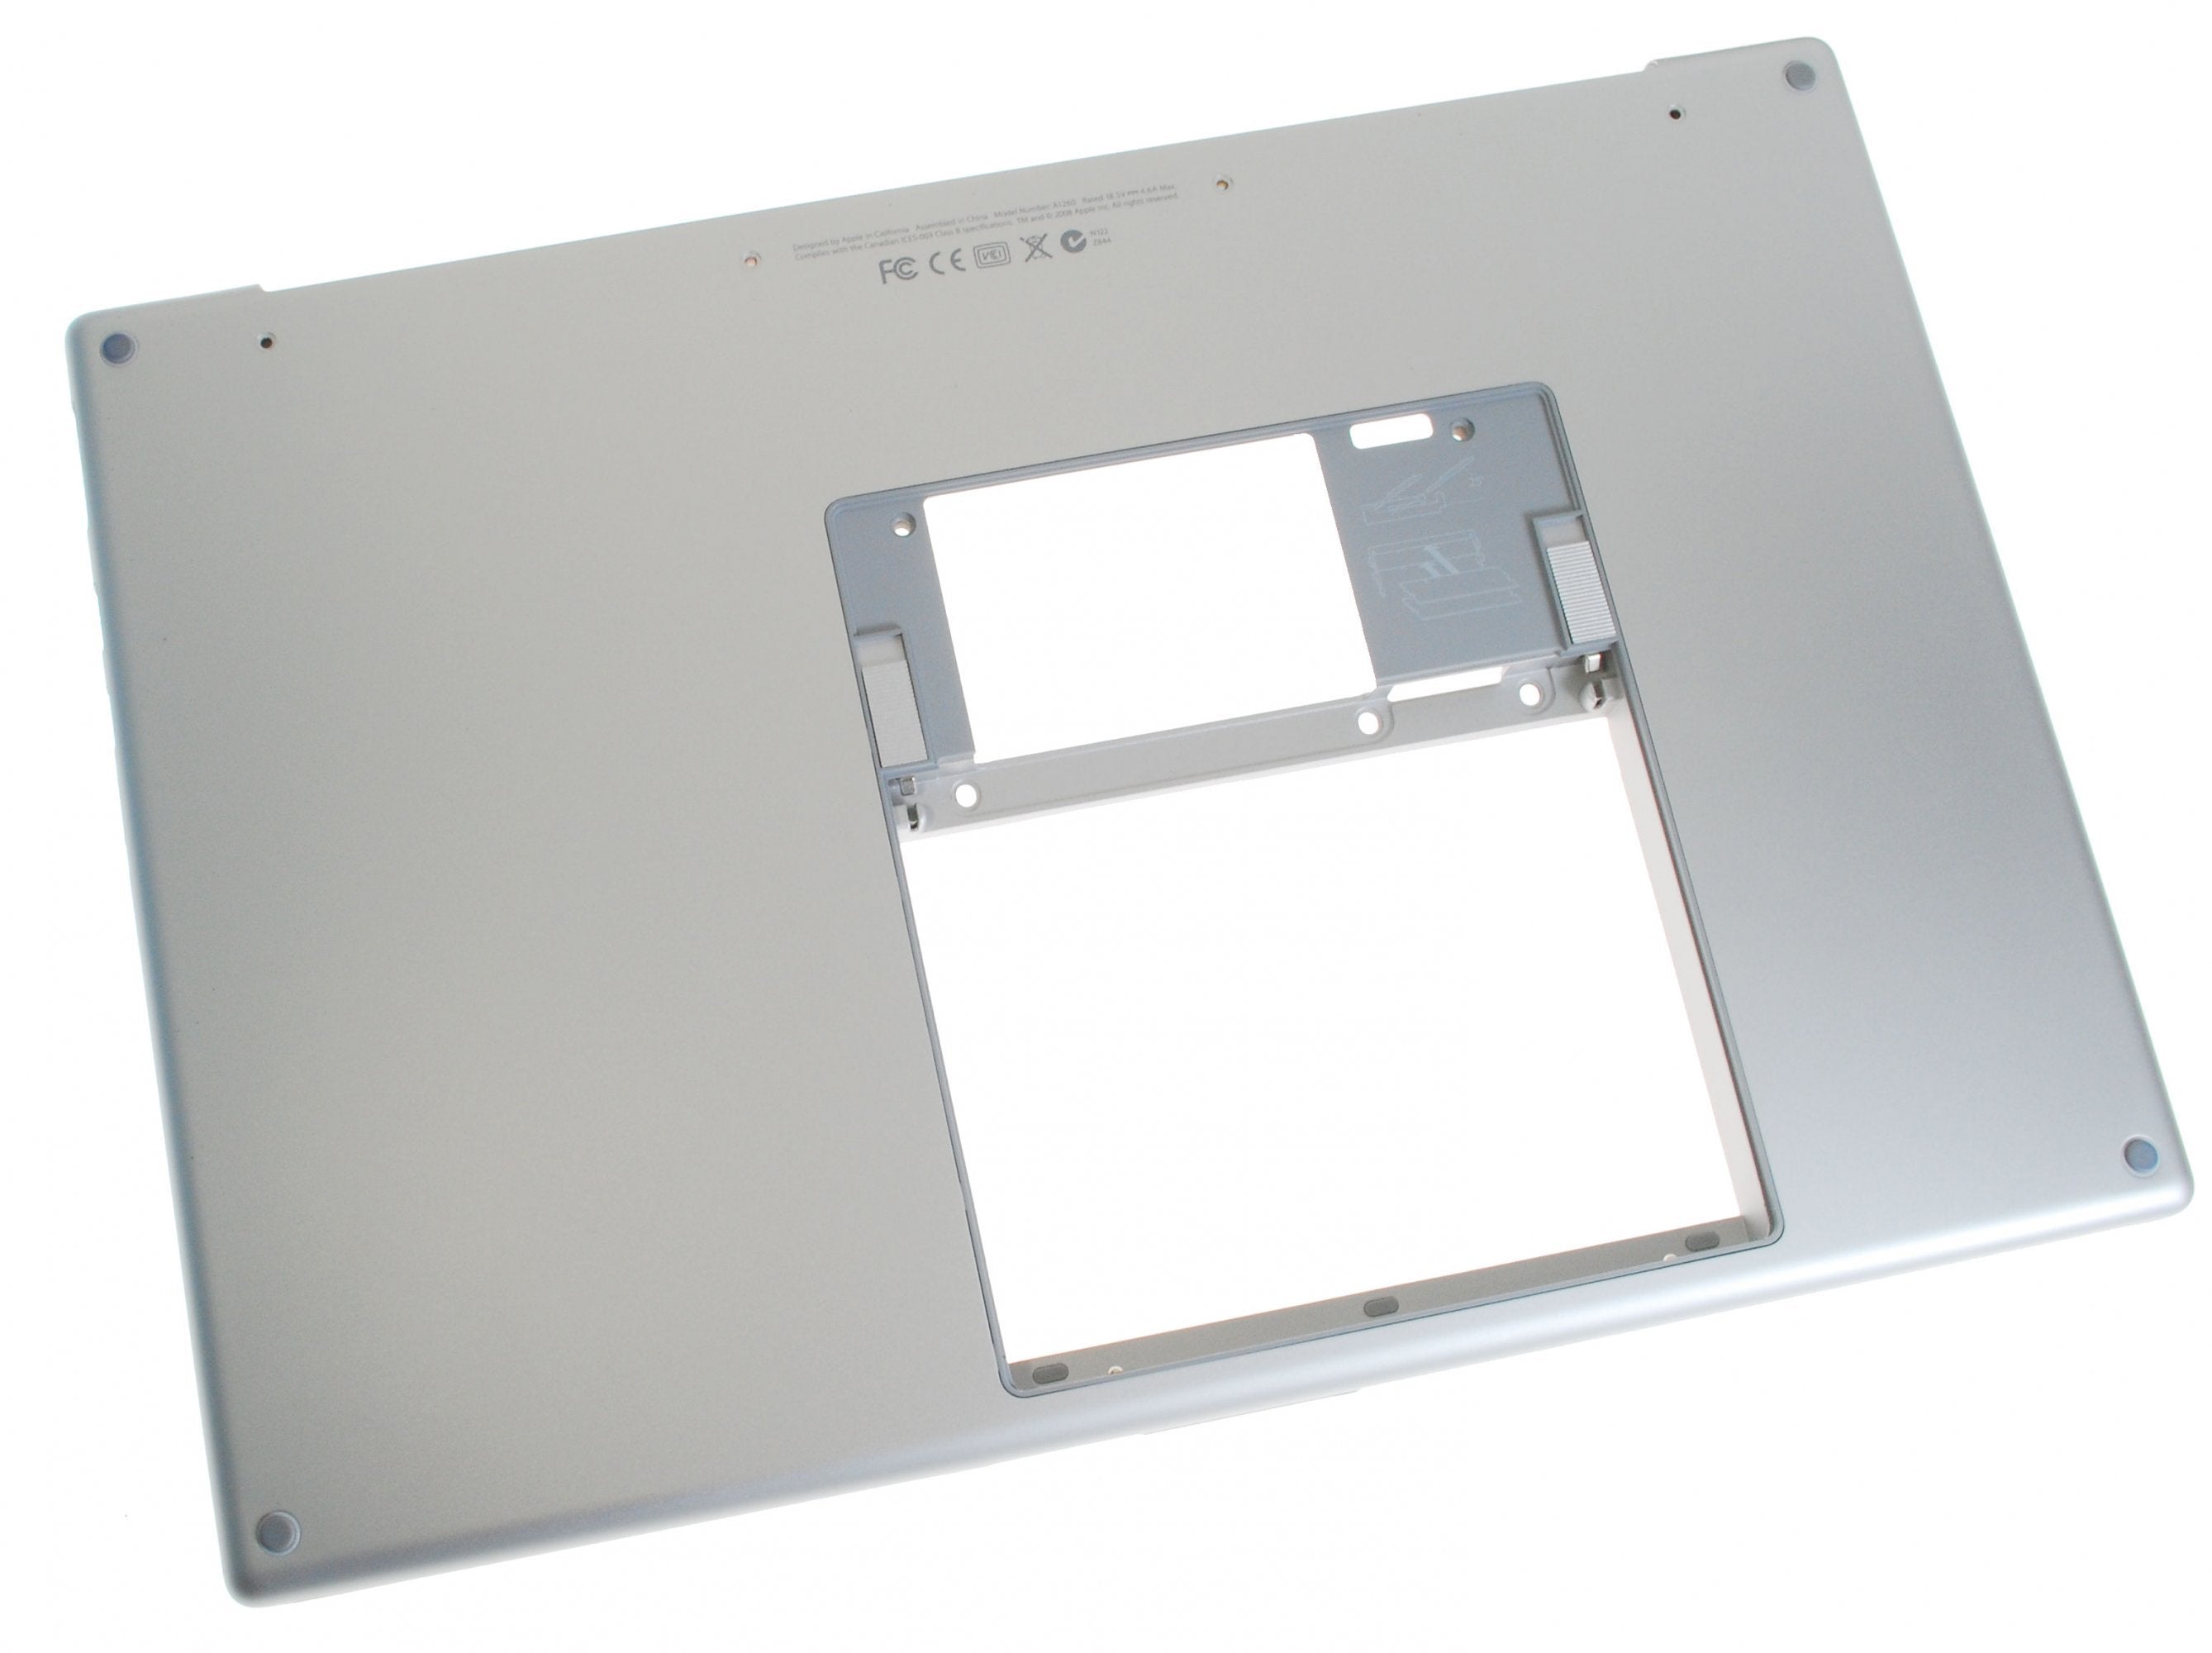 MacBook Pro 15" (Model A1260) Lower Case